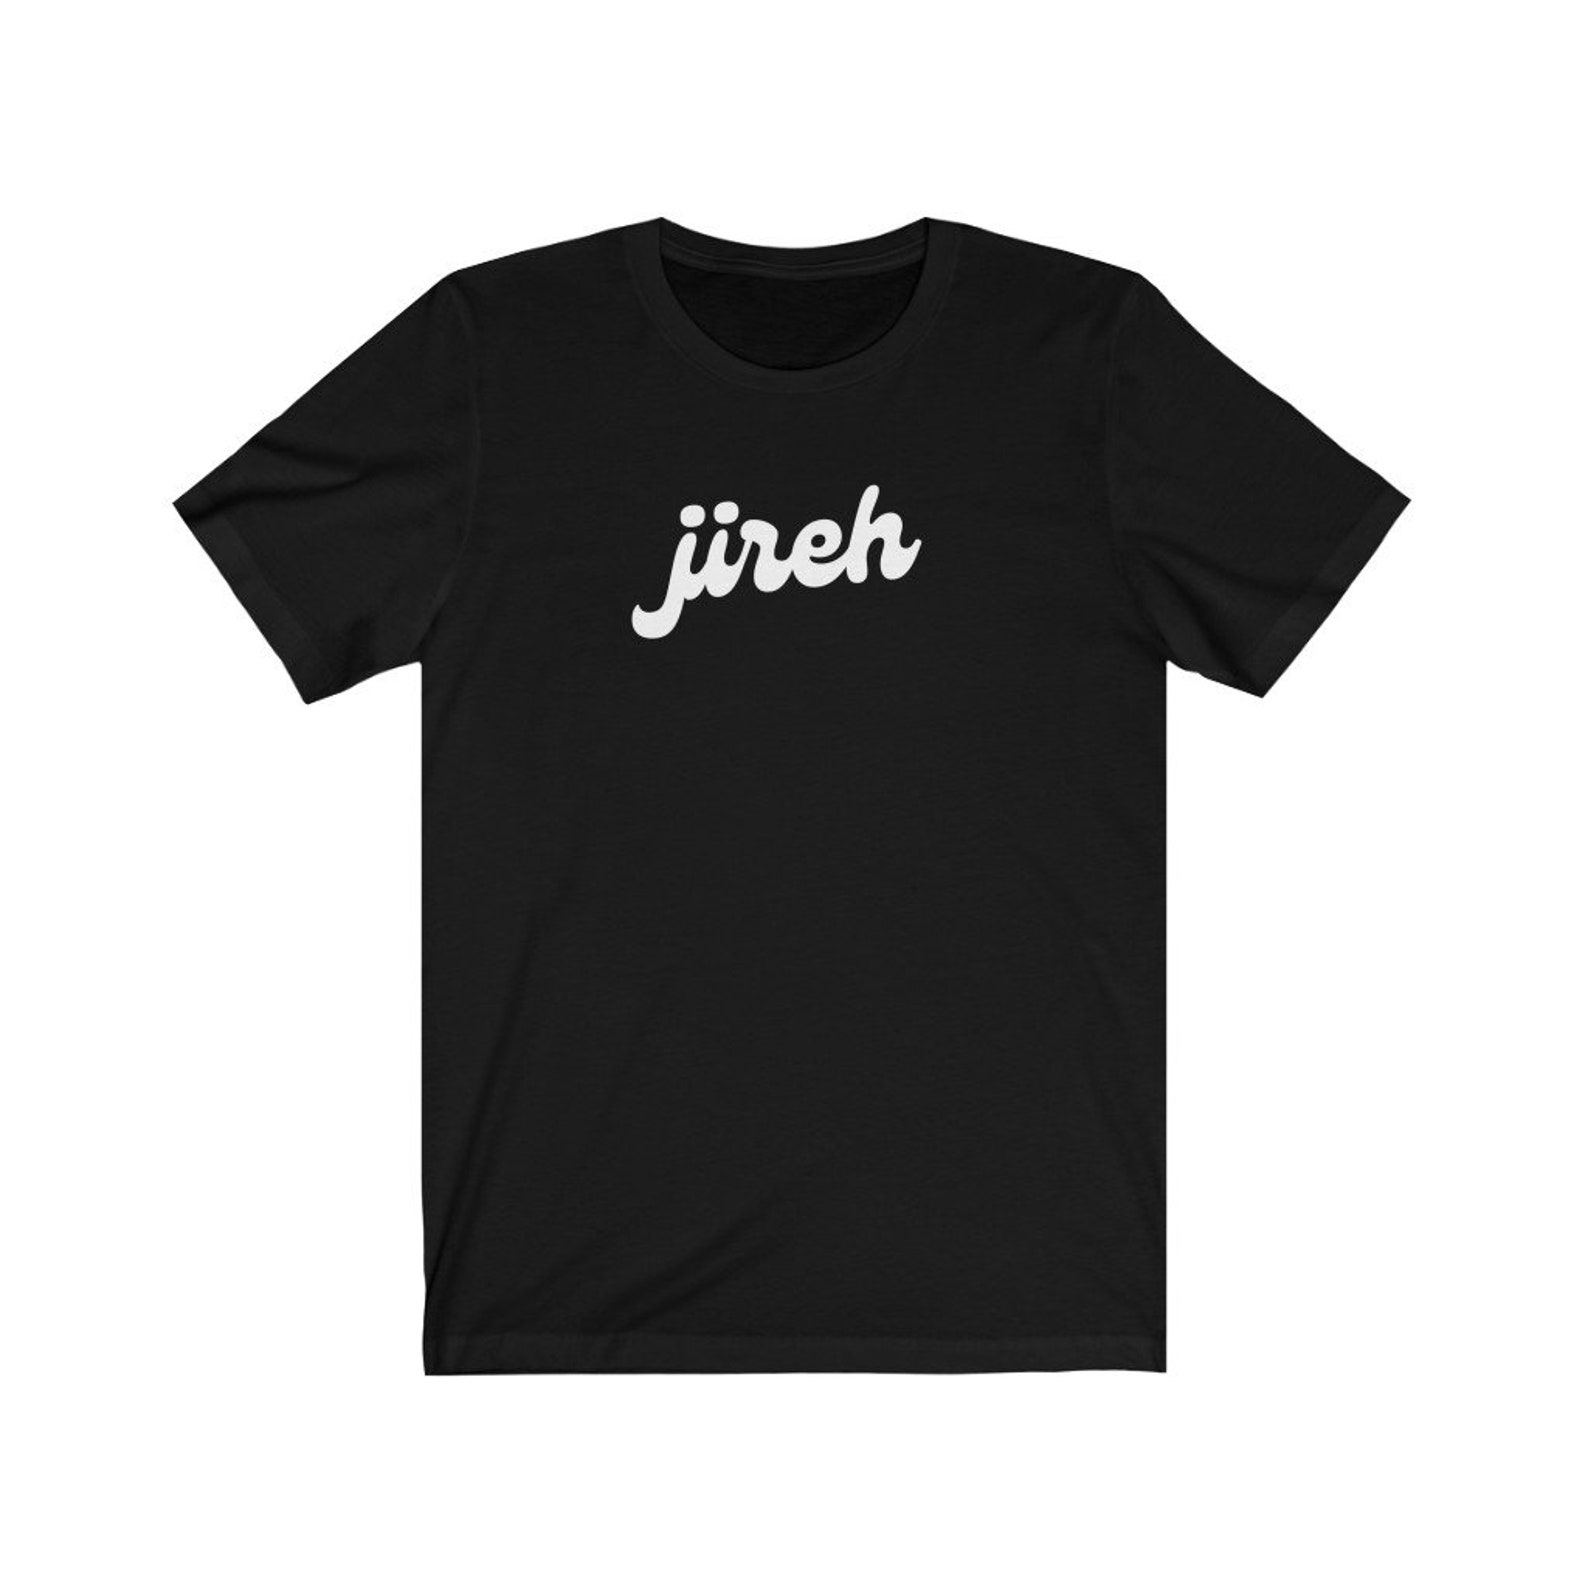 Jireh Christian T-Shirt Jireh Christian Tee Jireh Tee Jireh | Etsy